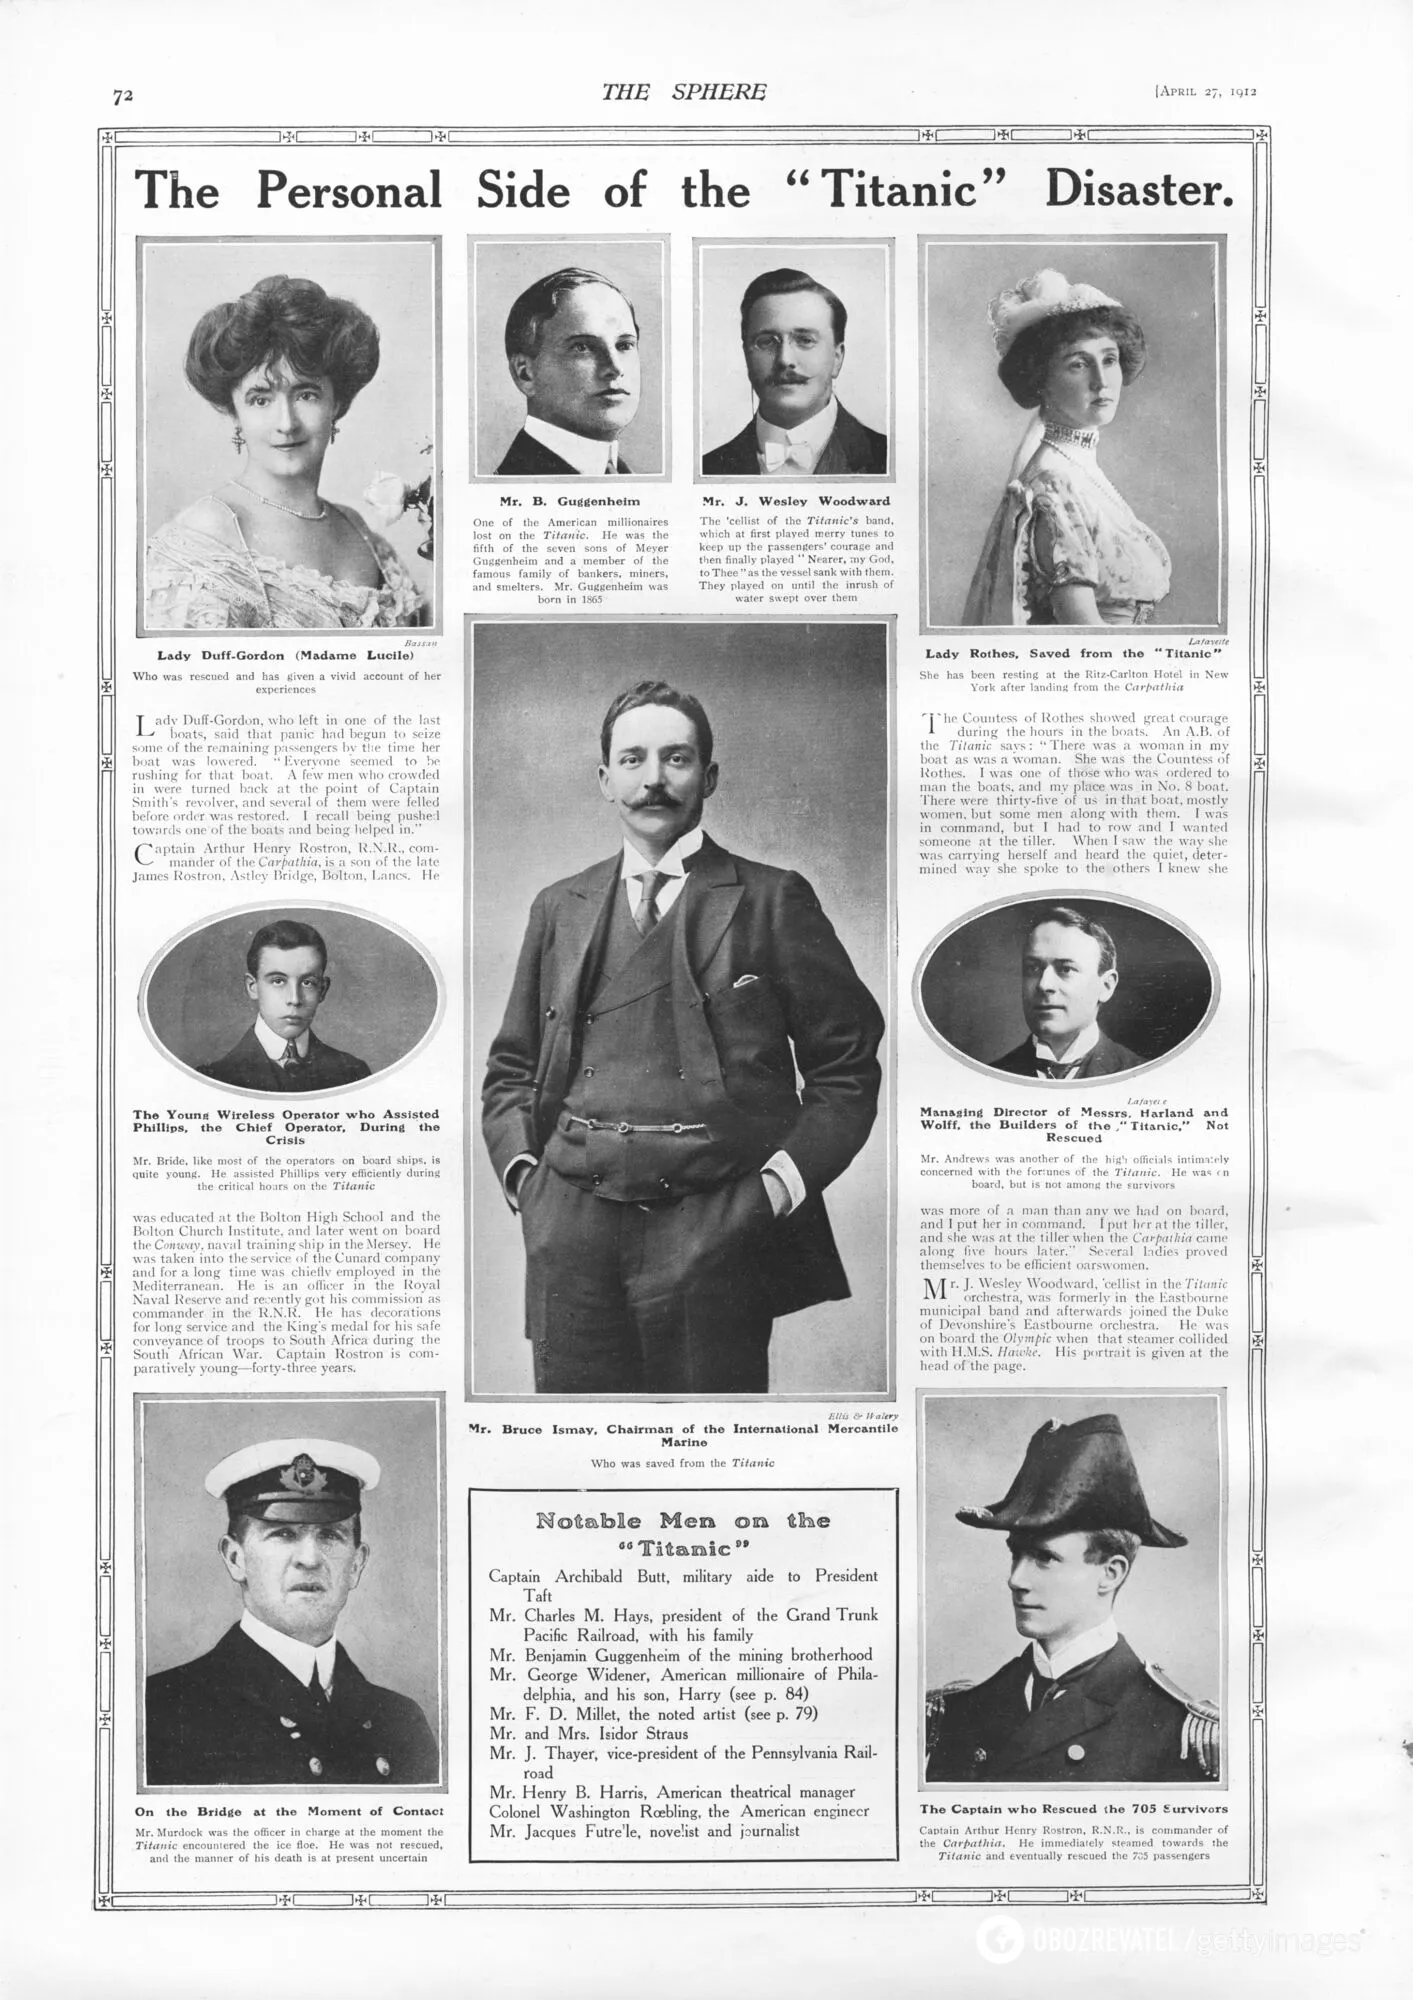 Фотографії та інформація про відомих людей, пов'язаних із "Титаніком", третій – віолончеліст Джон Візлі Вудворт